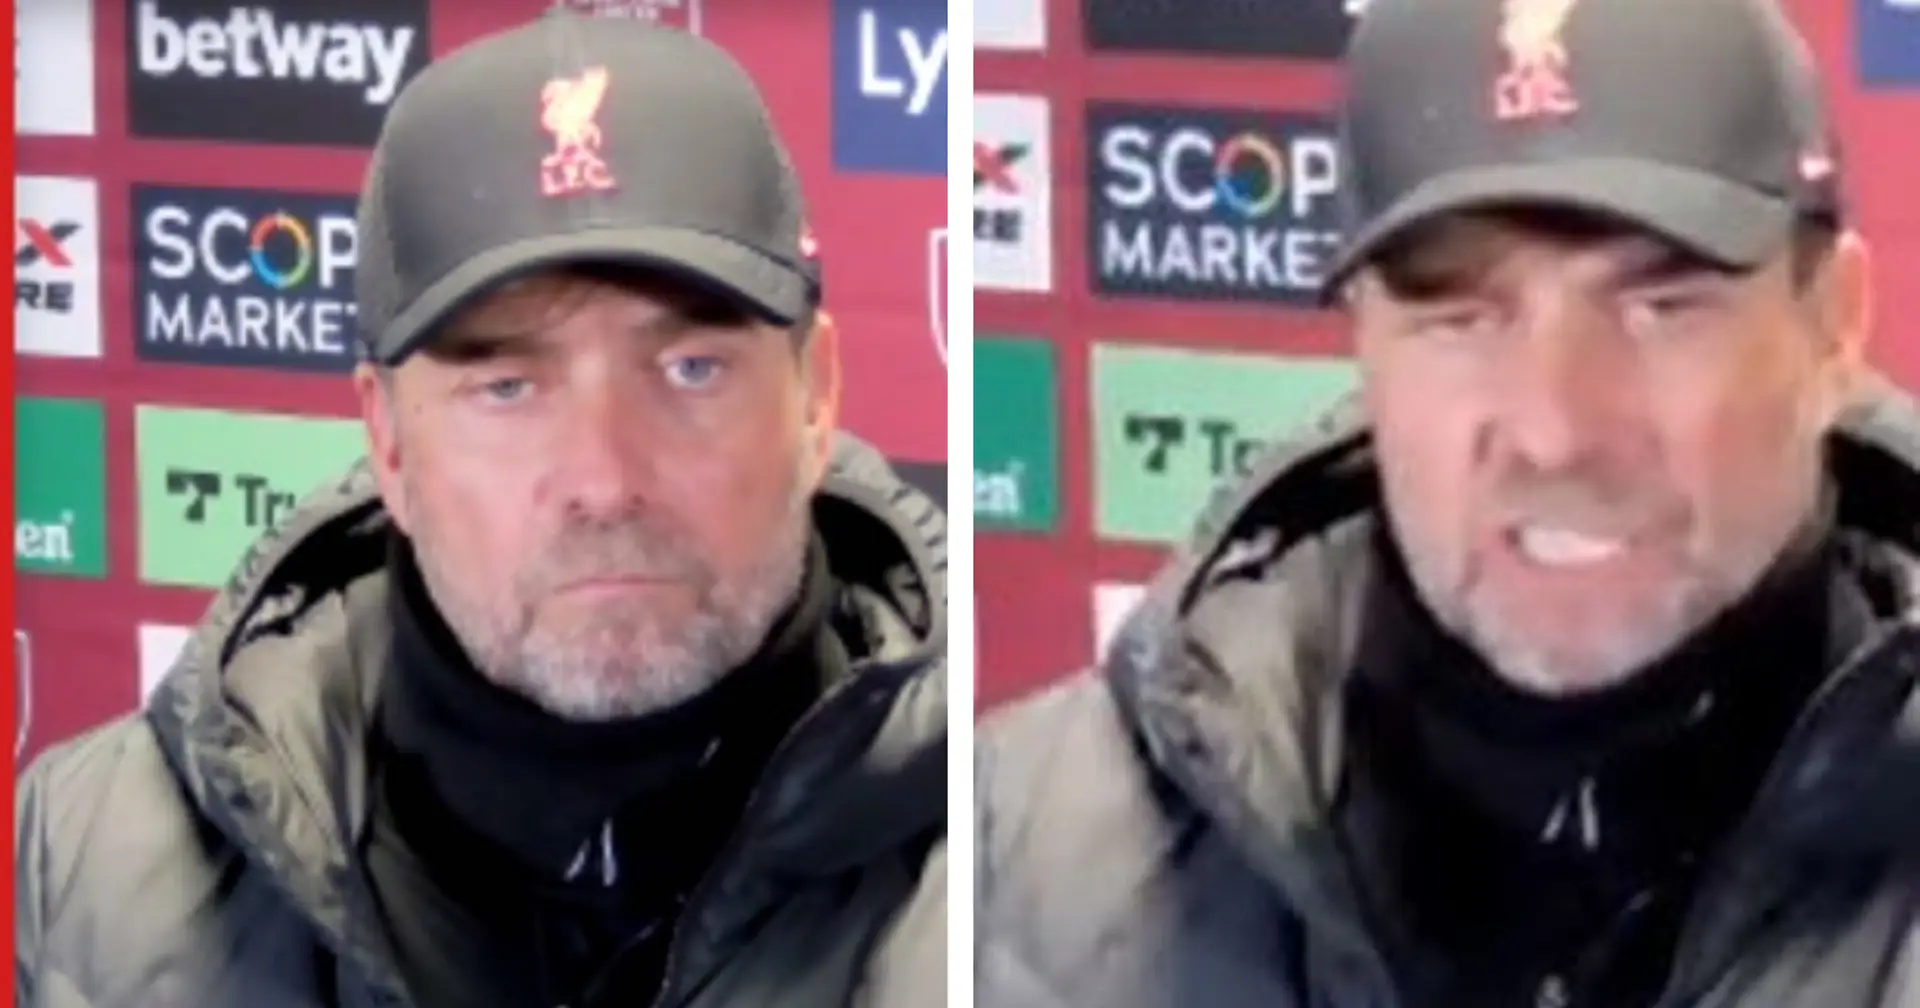 "Ich bin nicht dein Welpe!": Jürgen Klopp schießt gegen Reporter in Pressekonferenz nach Pleite vs. West Ham 